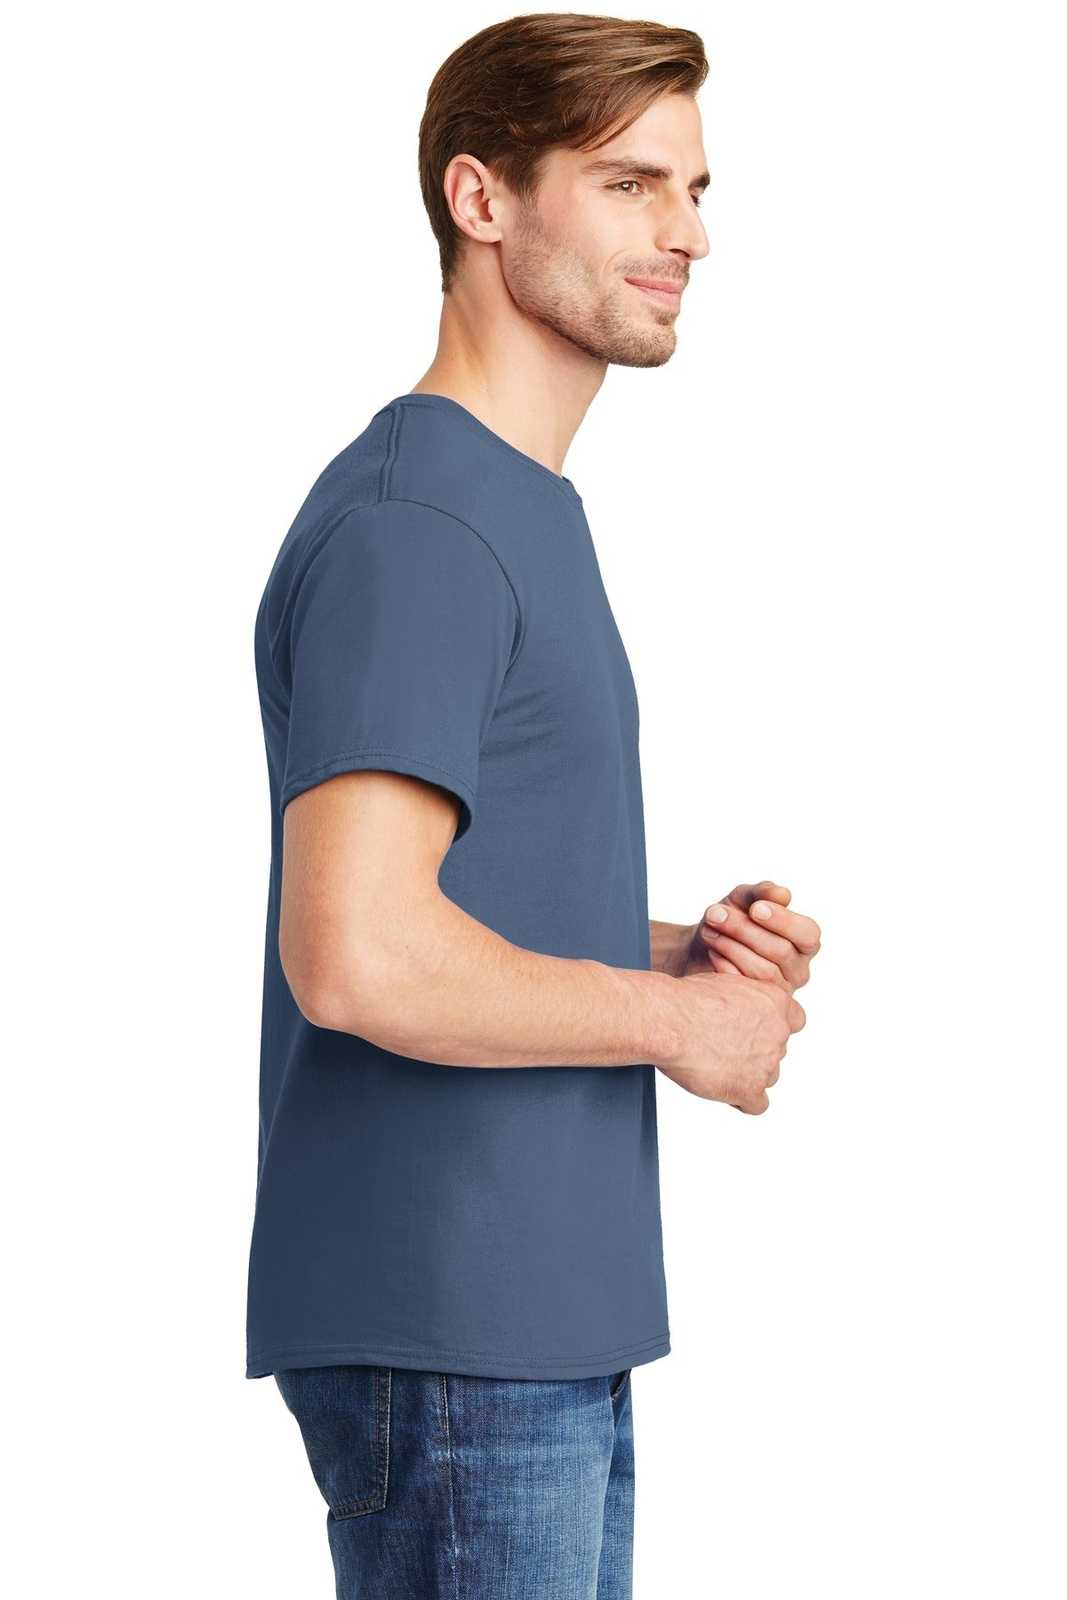 Hanes 5280 Comfortsoft 100% Cotton T-Shirt - Denim Blue - HIT a Double